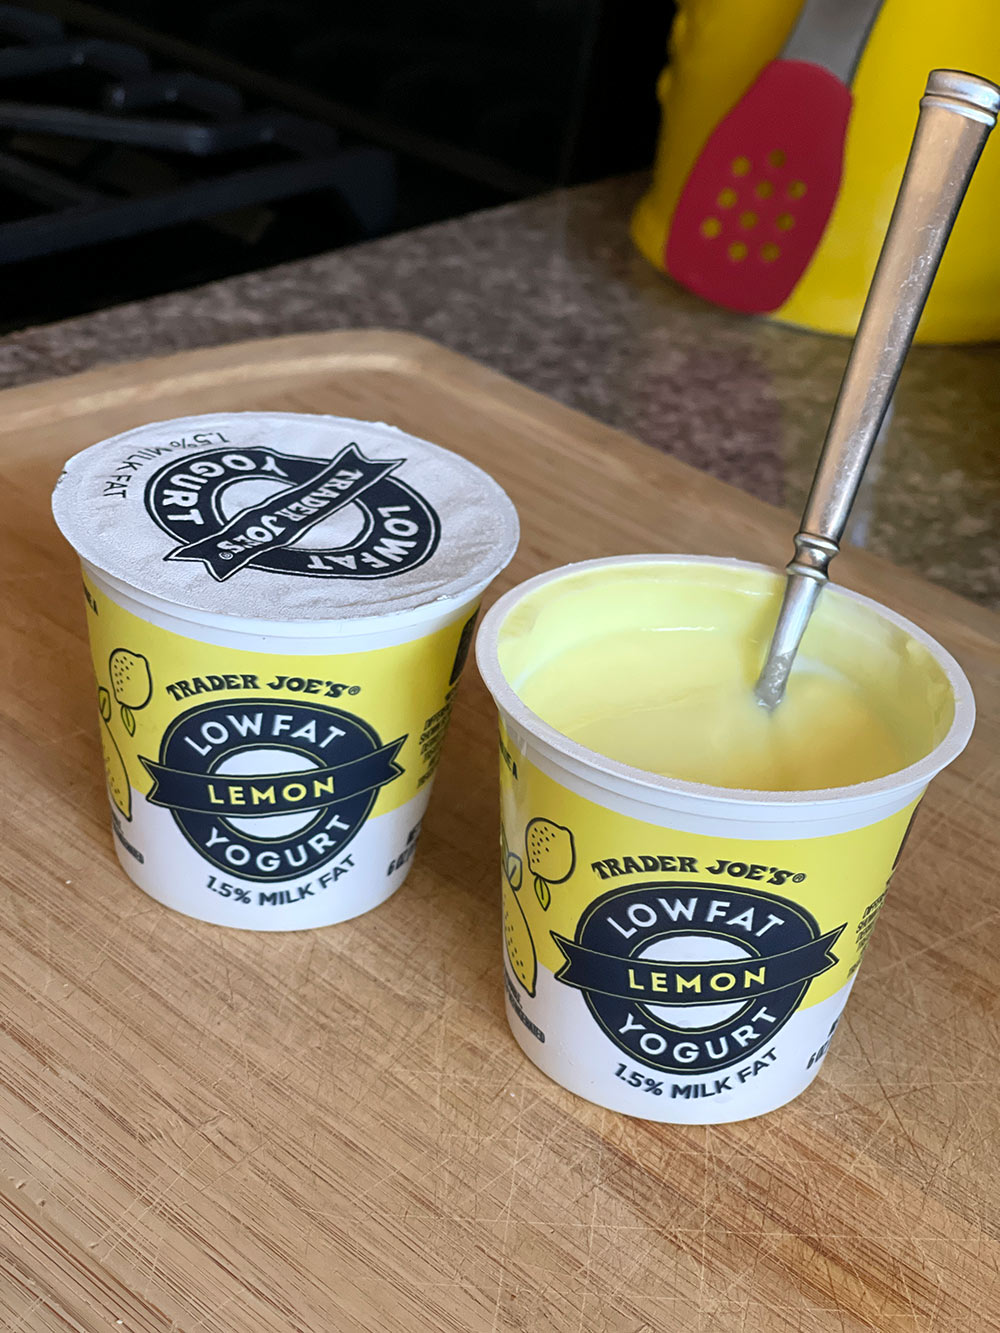 trader joes lowfat lemon yogurt